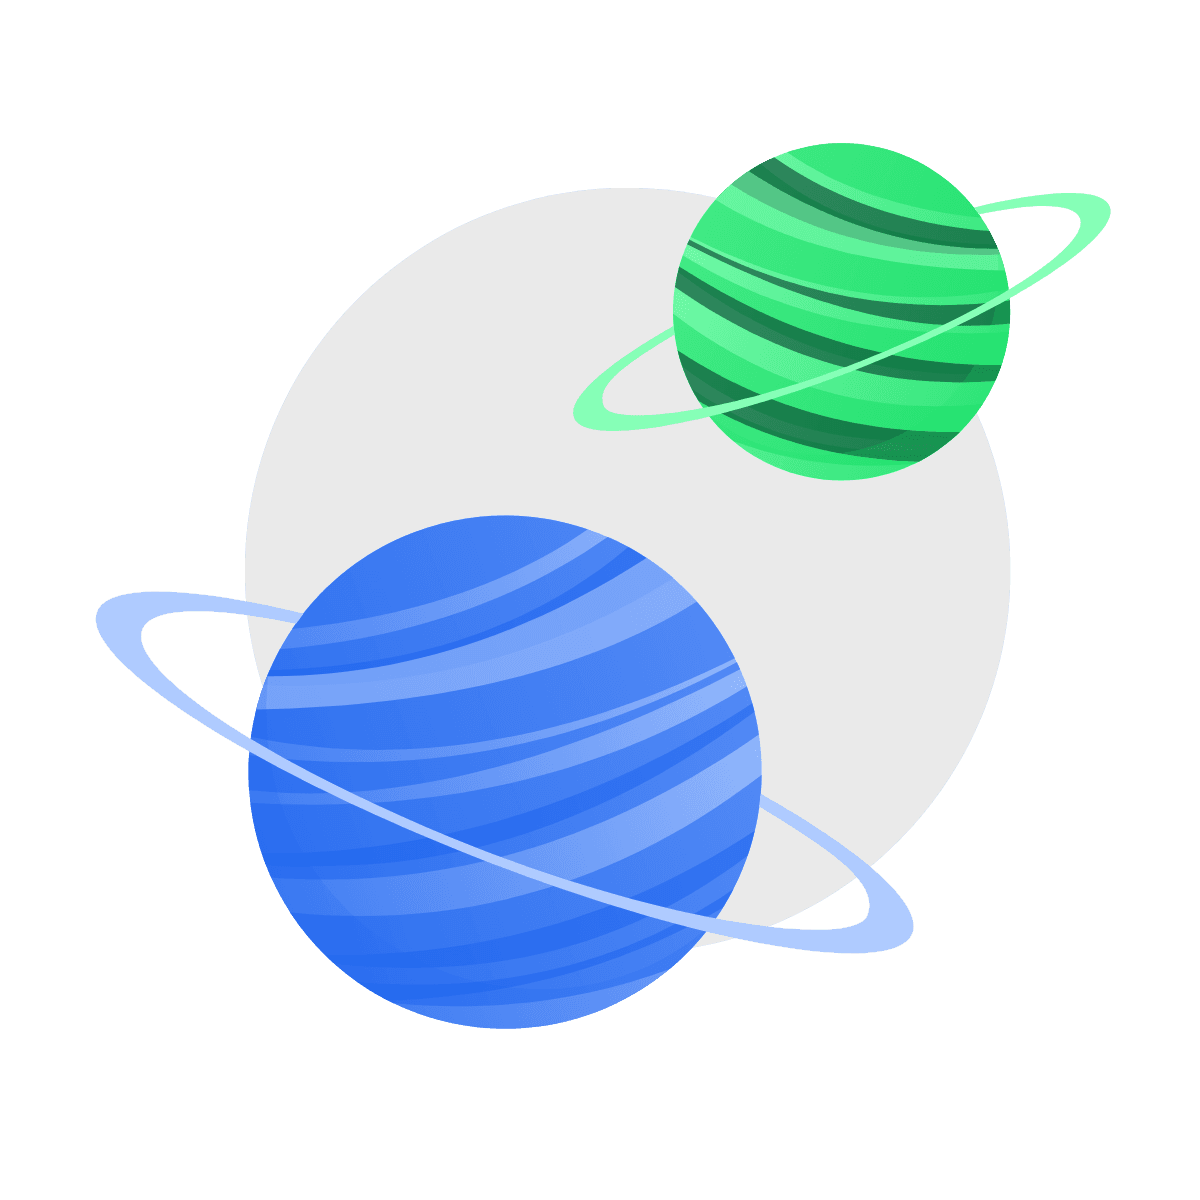 Zwei Planeten in Grün und Blau